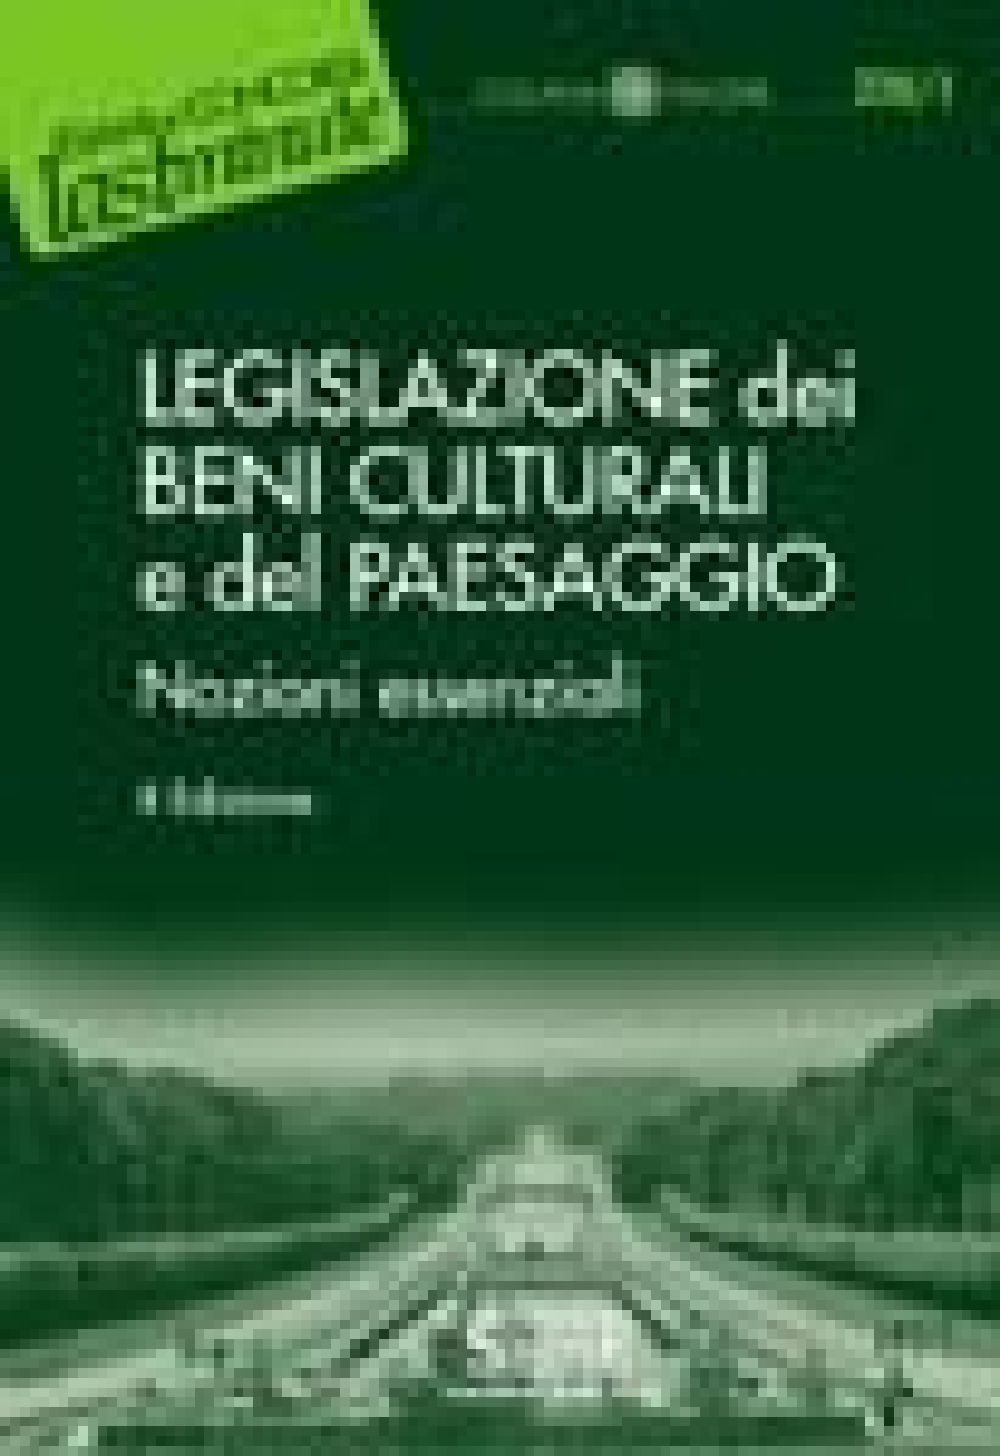 [Ebook] Legislazione dei Beni Culturali e del Paesaggio